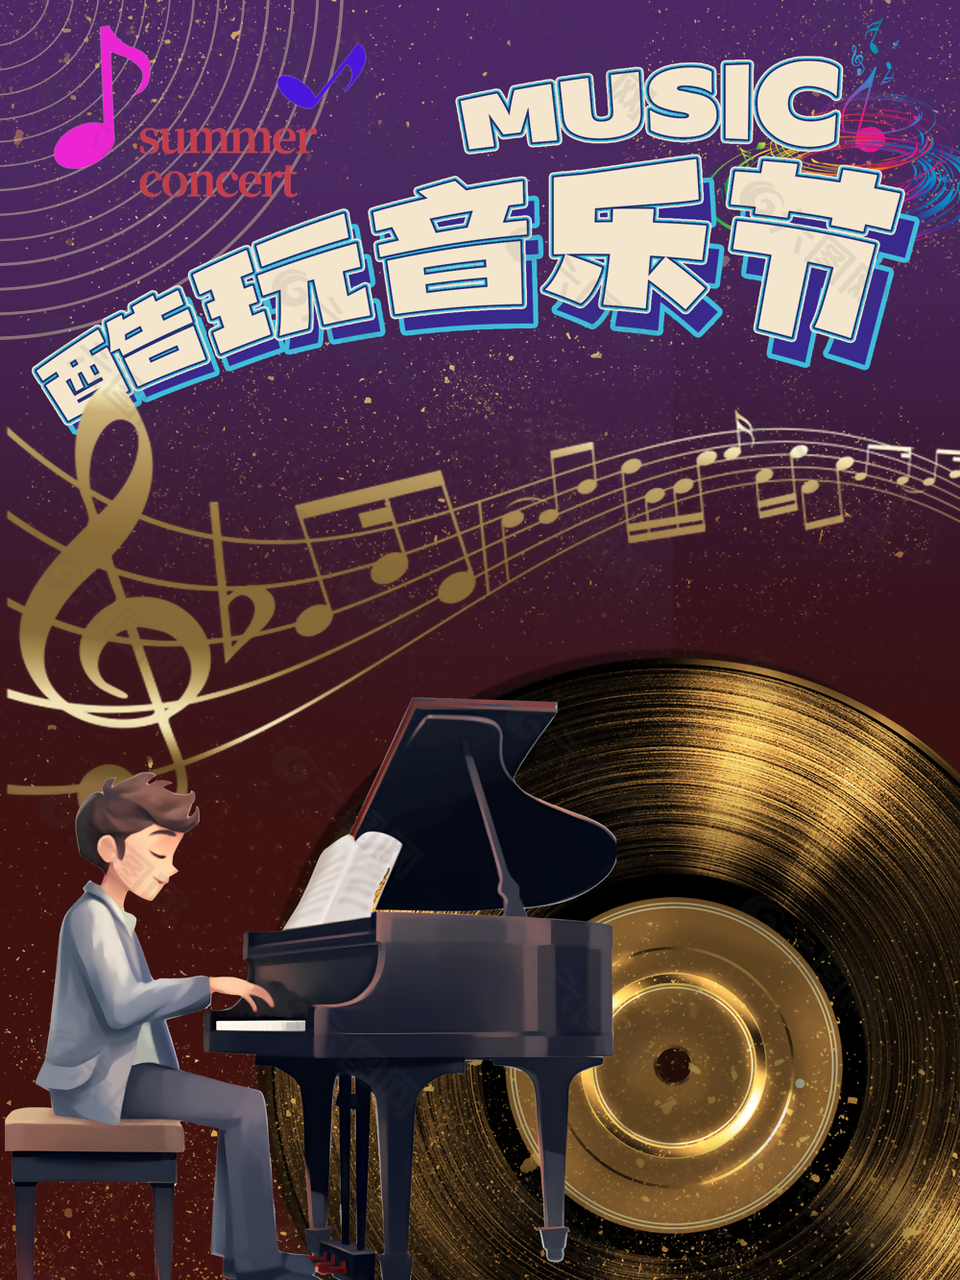 深邃漫画风卡通钢琴元素音乐节海报下载